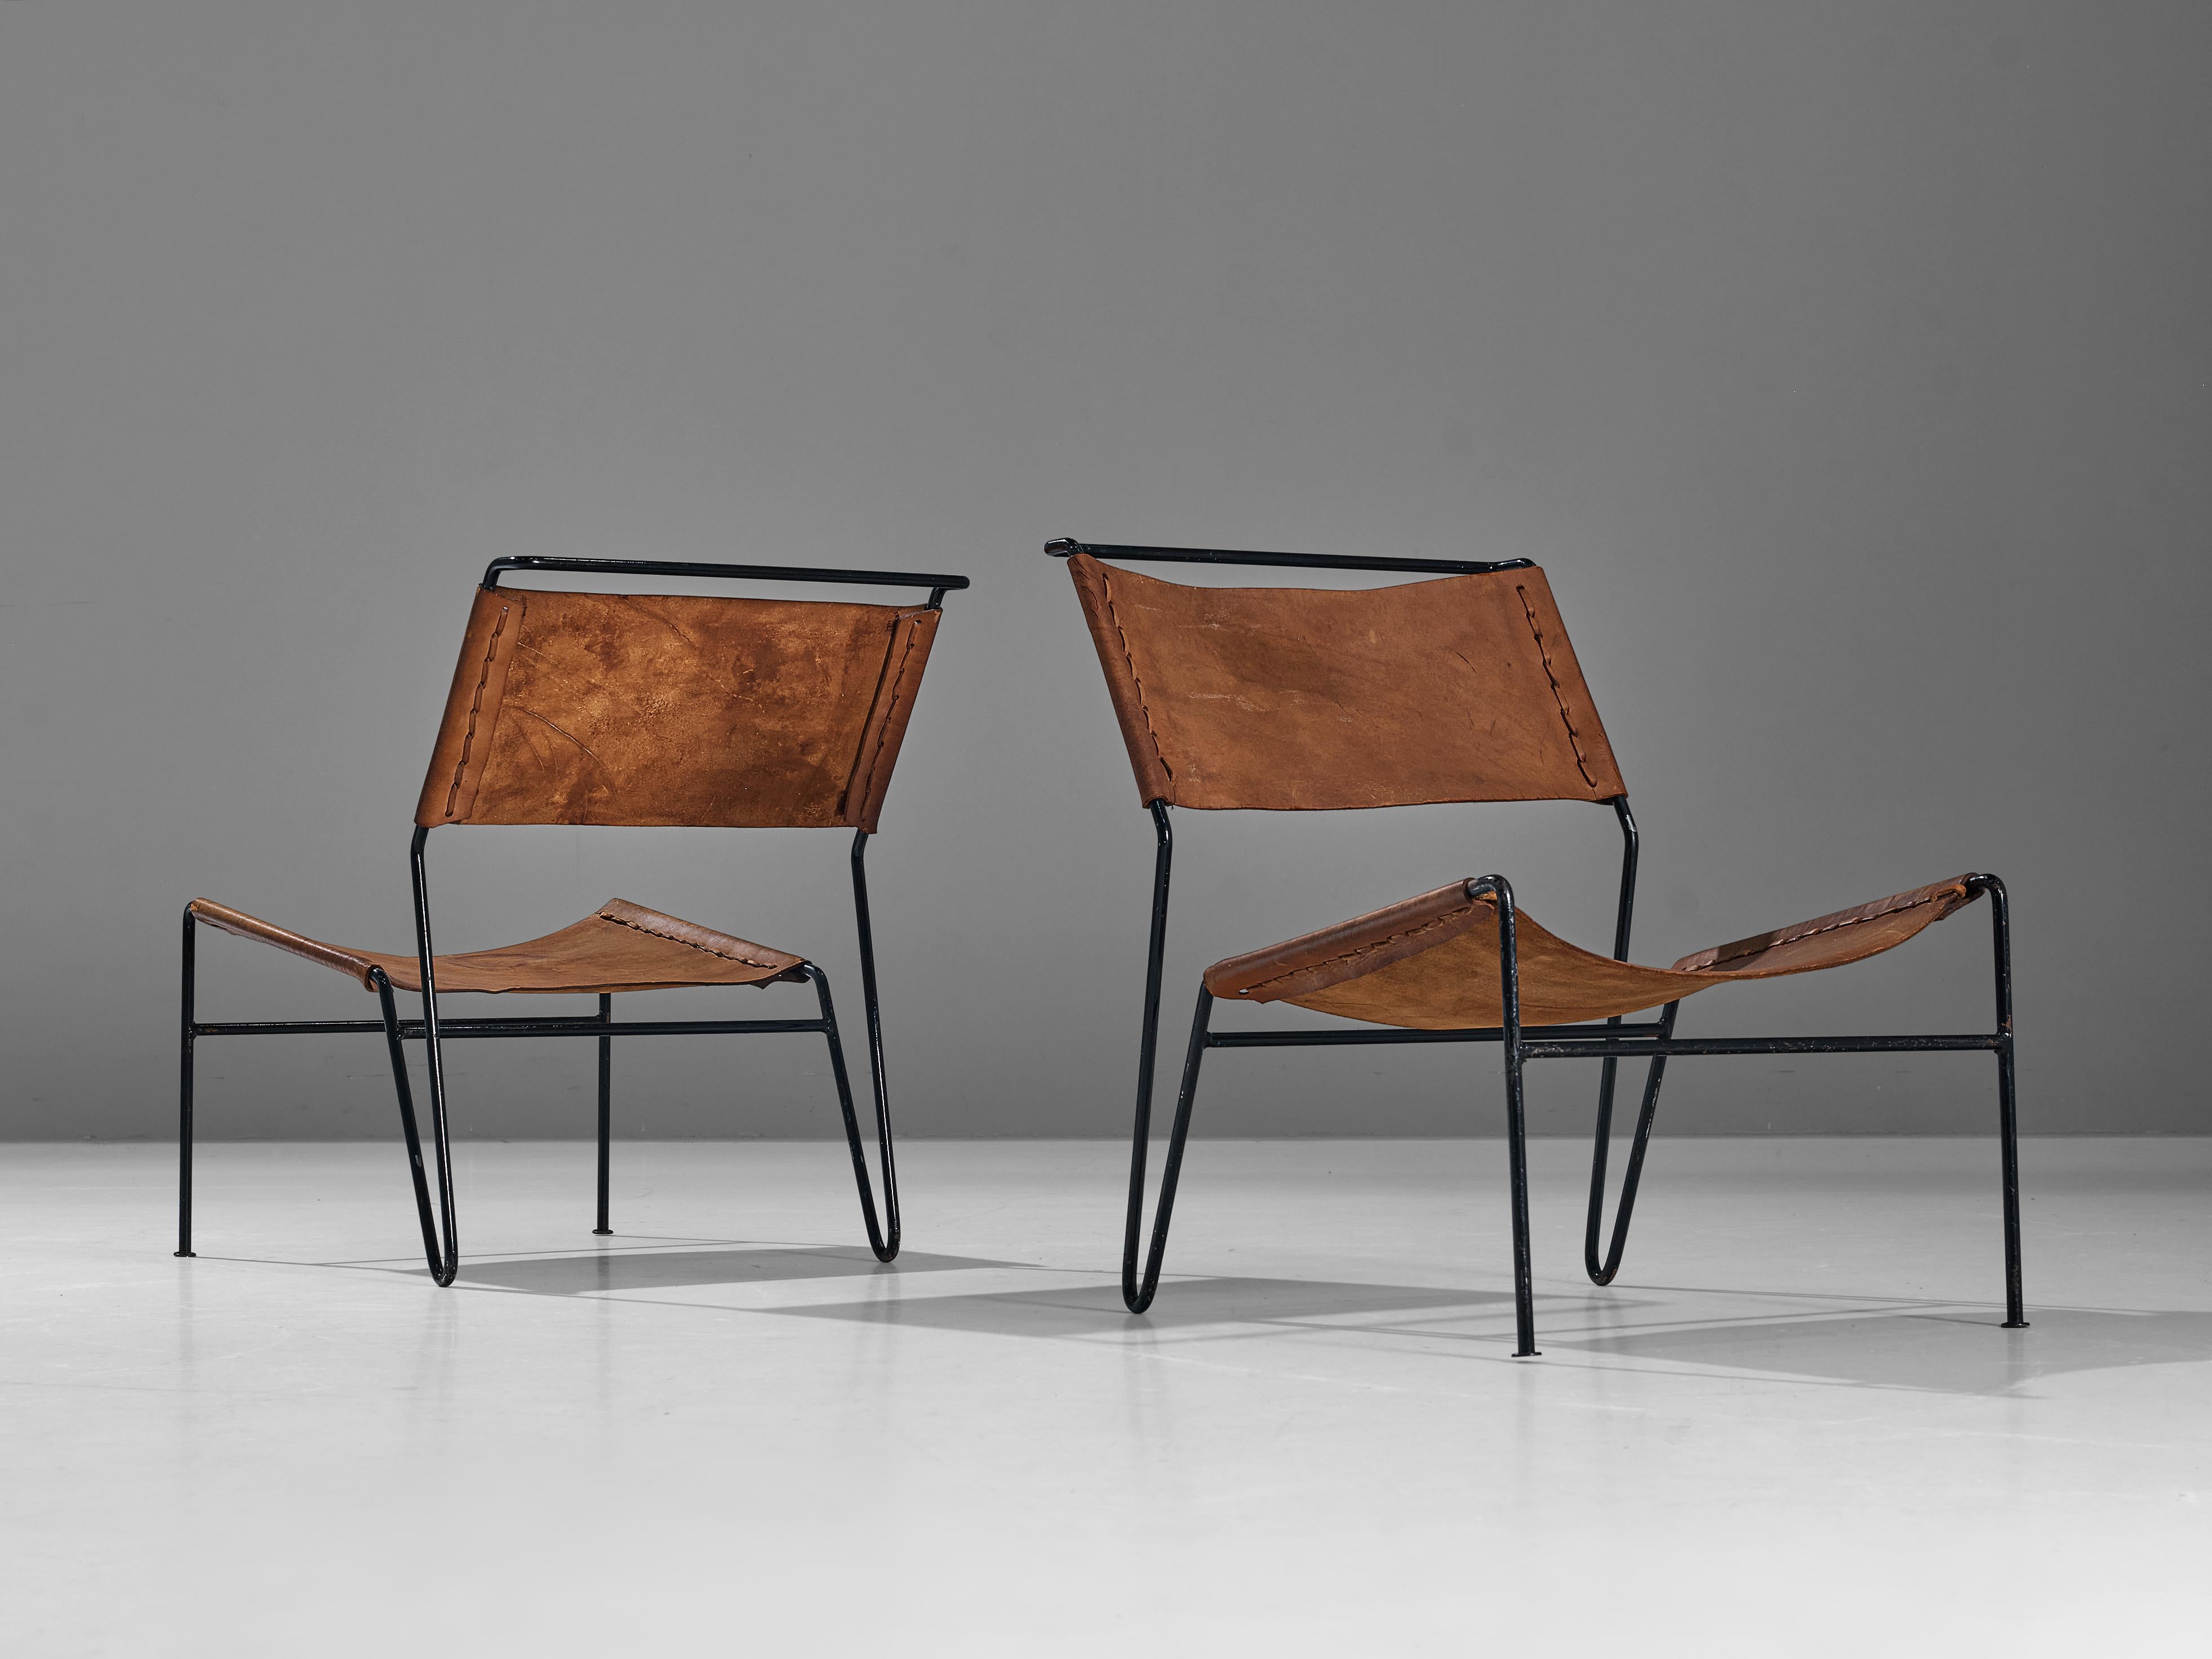 A. Dolleman pour Metz & Co, paire de fauteuils, cuir de selle, métal tubulaire, Pays-Bas, années 1950

Paire de fauteuils modernes conçus par le designer néerlandais A. Dolleman pour Metz & Co. Les chaises ont un design unique et attrayant. Le cadre